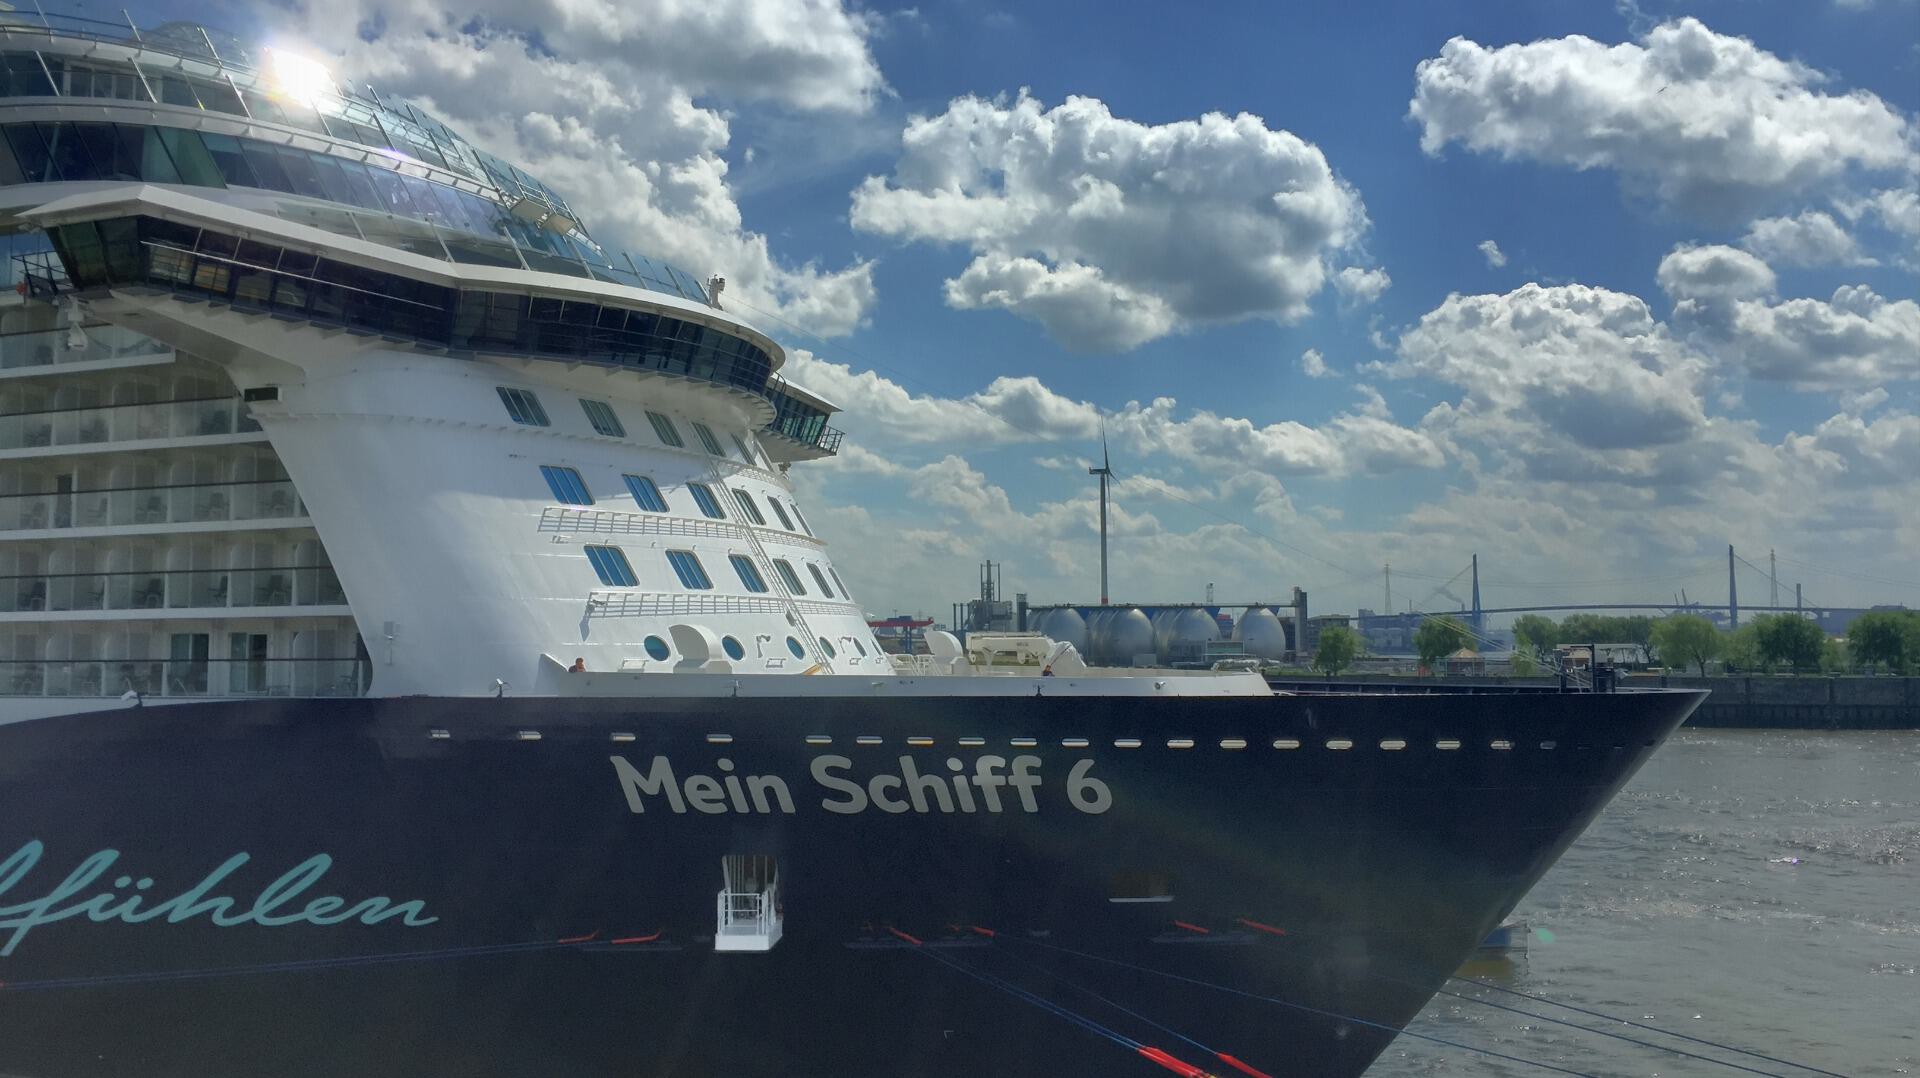 <h1>Reisebericht Mein Schiff 6</h1>